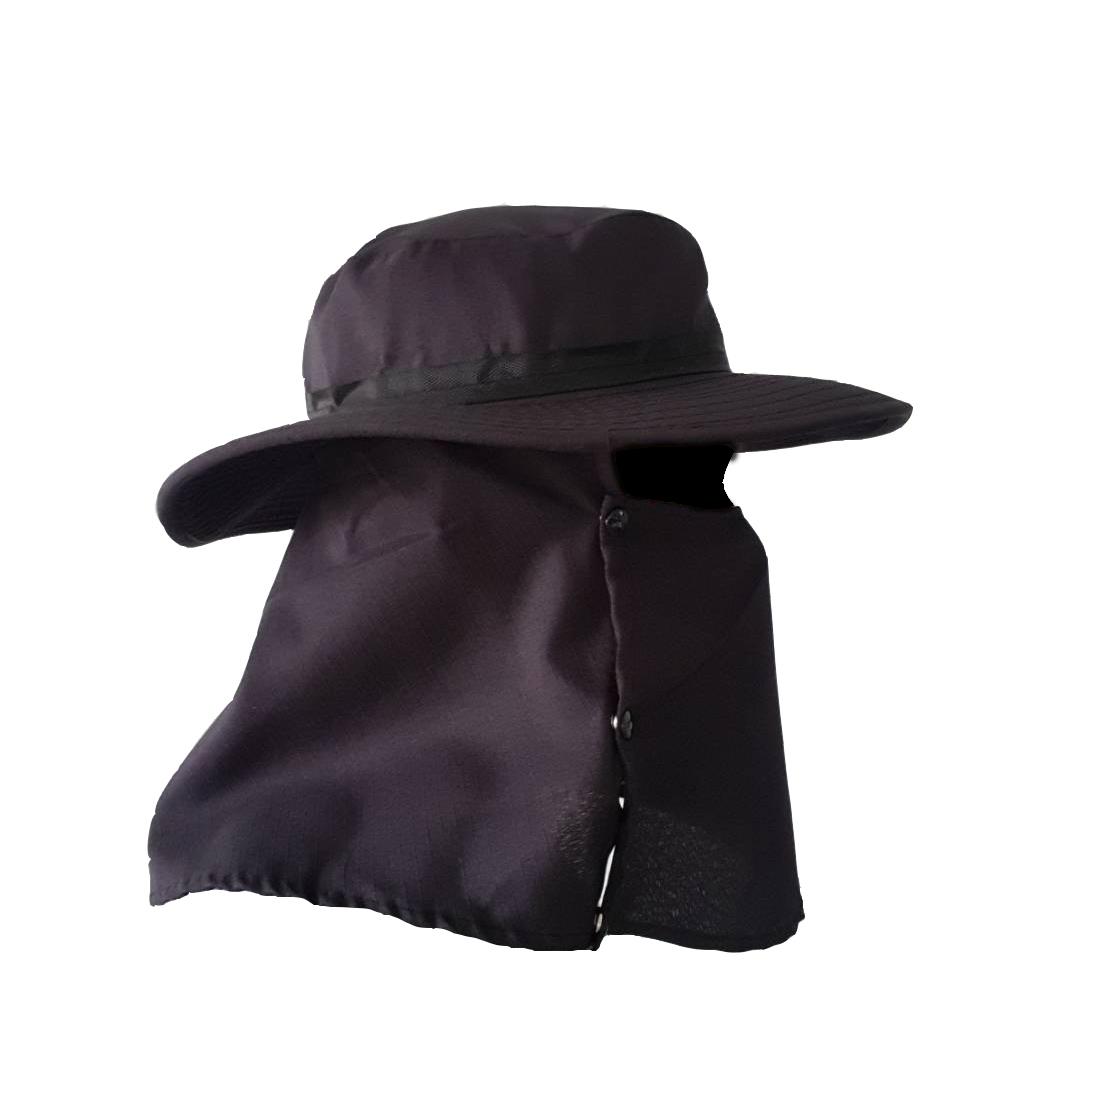 หมวกขนาด free size หมวกปิดหน้า หมวกกันแดด หมวกทำงาน หมวกชาวสวน หมวกตกปลา หมวกเดินป่า หมวกทำนา หมวก รปภ หมวกทำไร่ หมวกลายทหาร